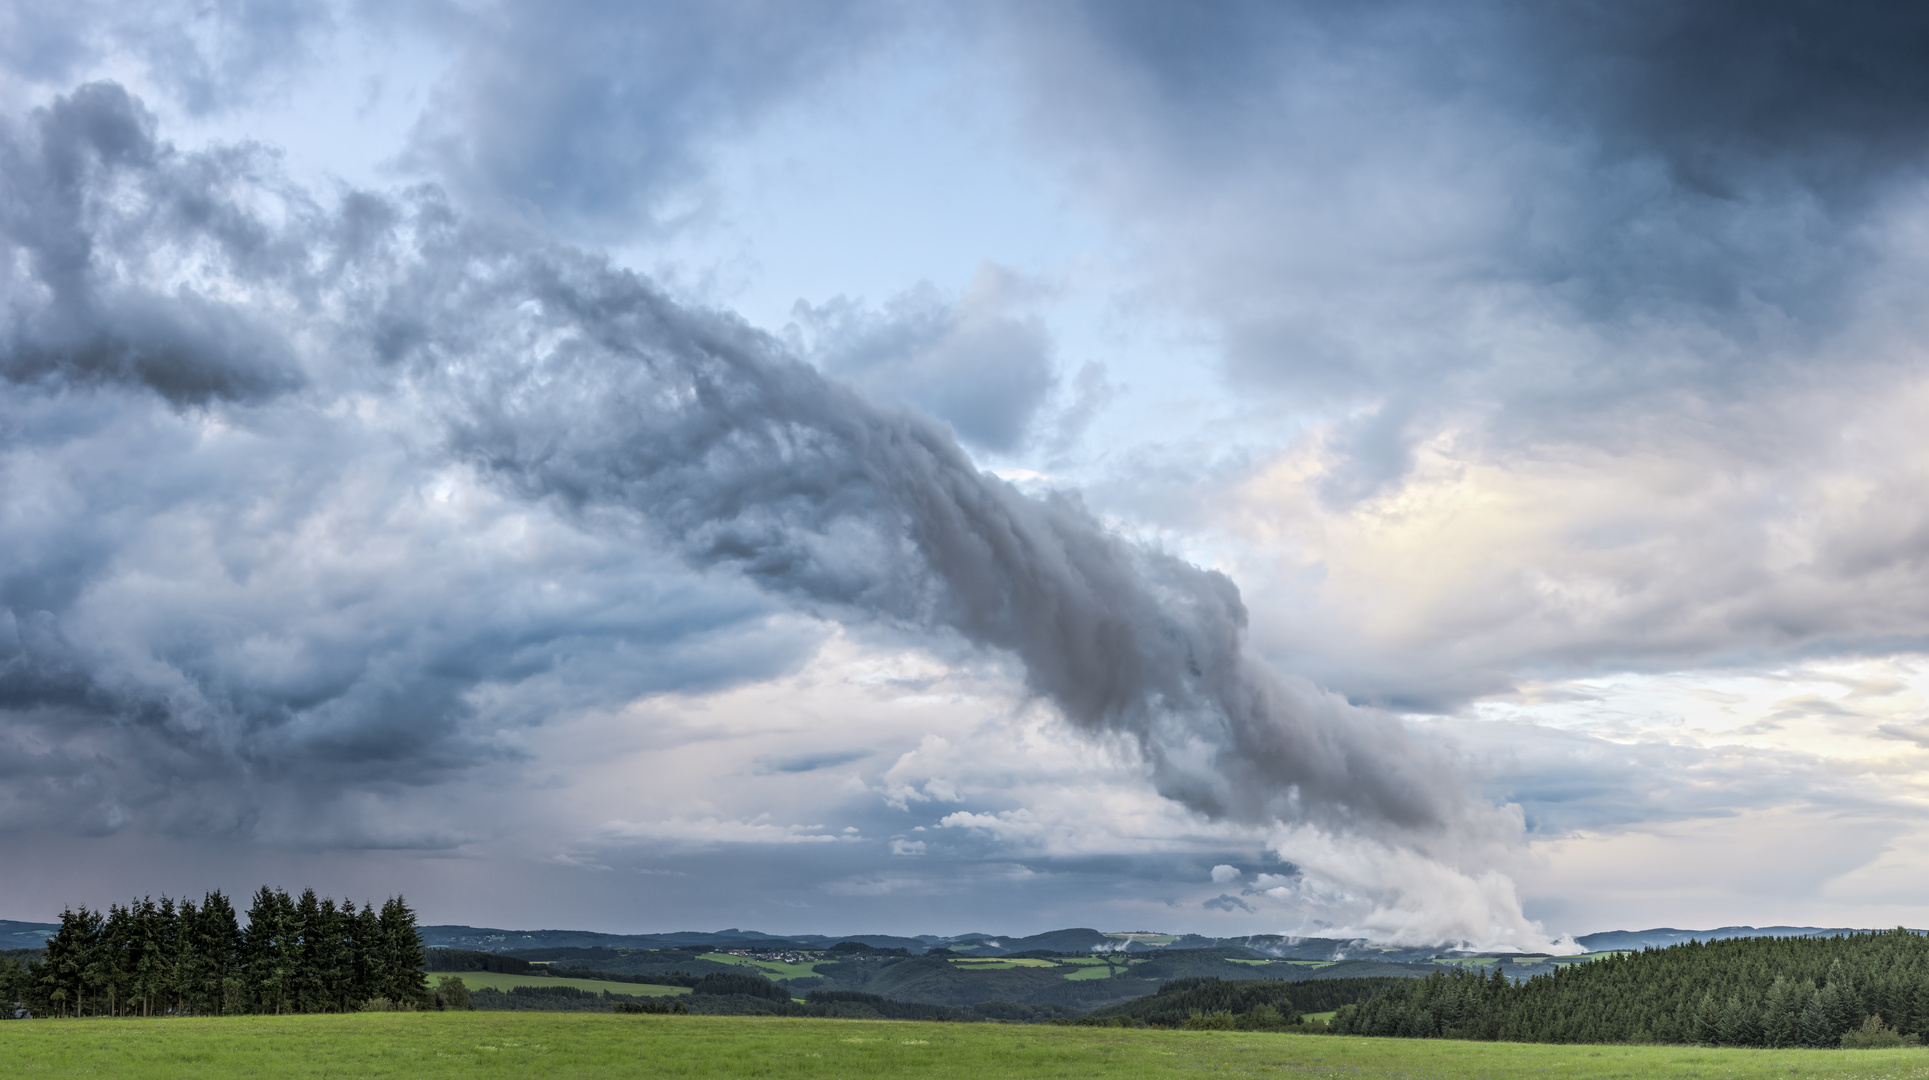 Wolkenwalze mit eingelagerten Turbulenzstrukturen